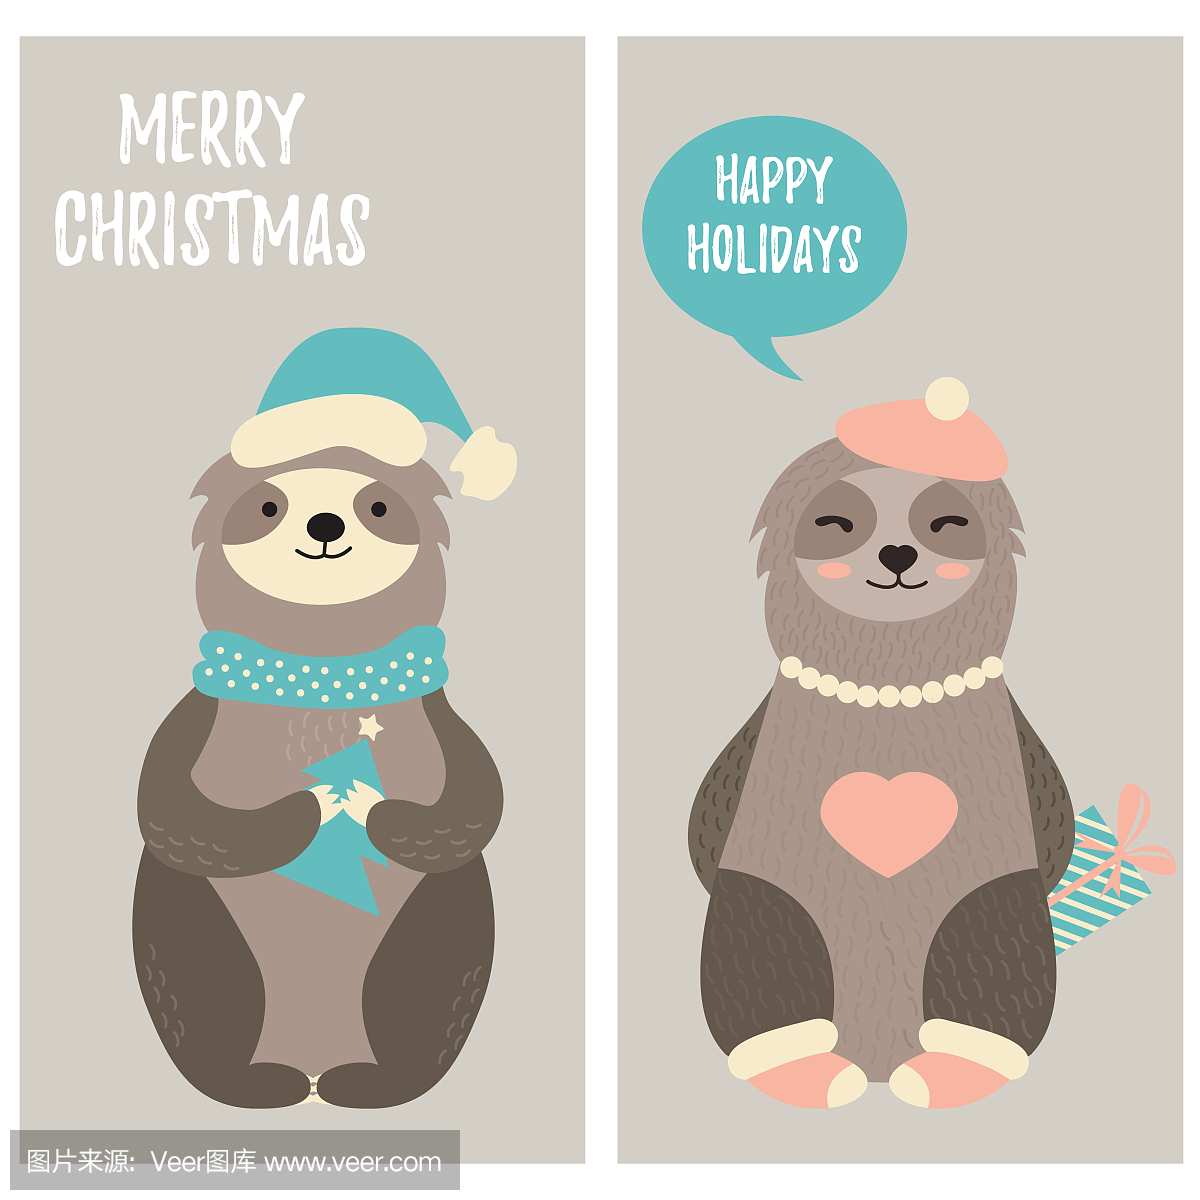 圣诞贺卡与两个有趣的树懒在冬天的衣服